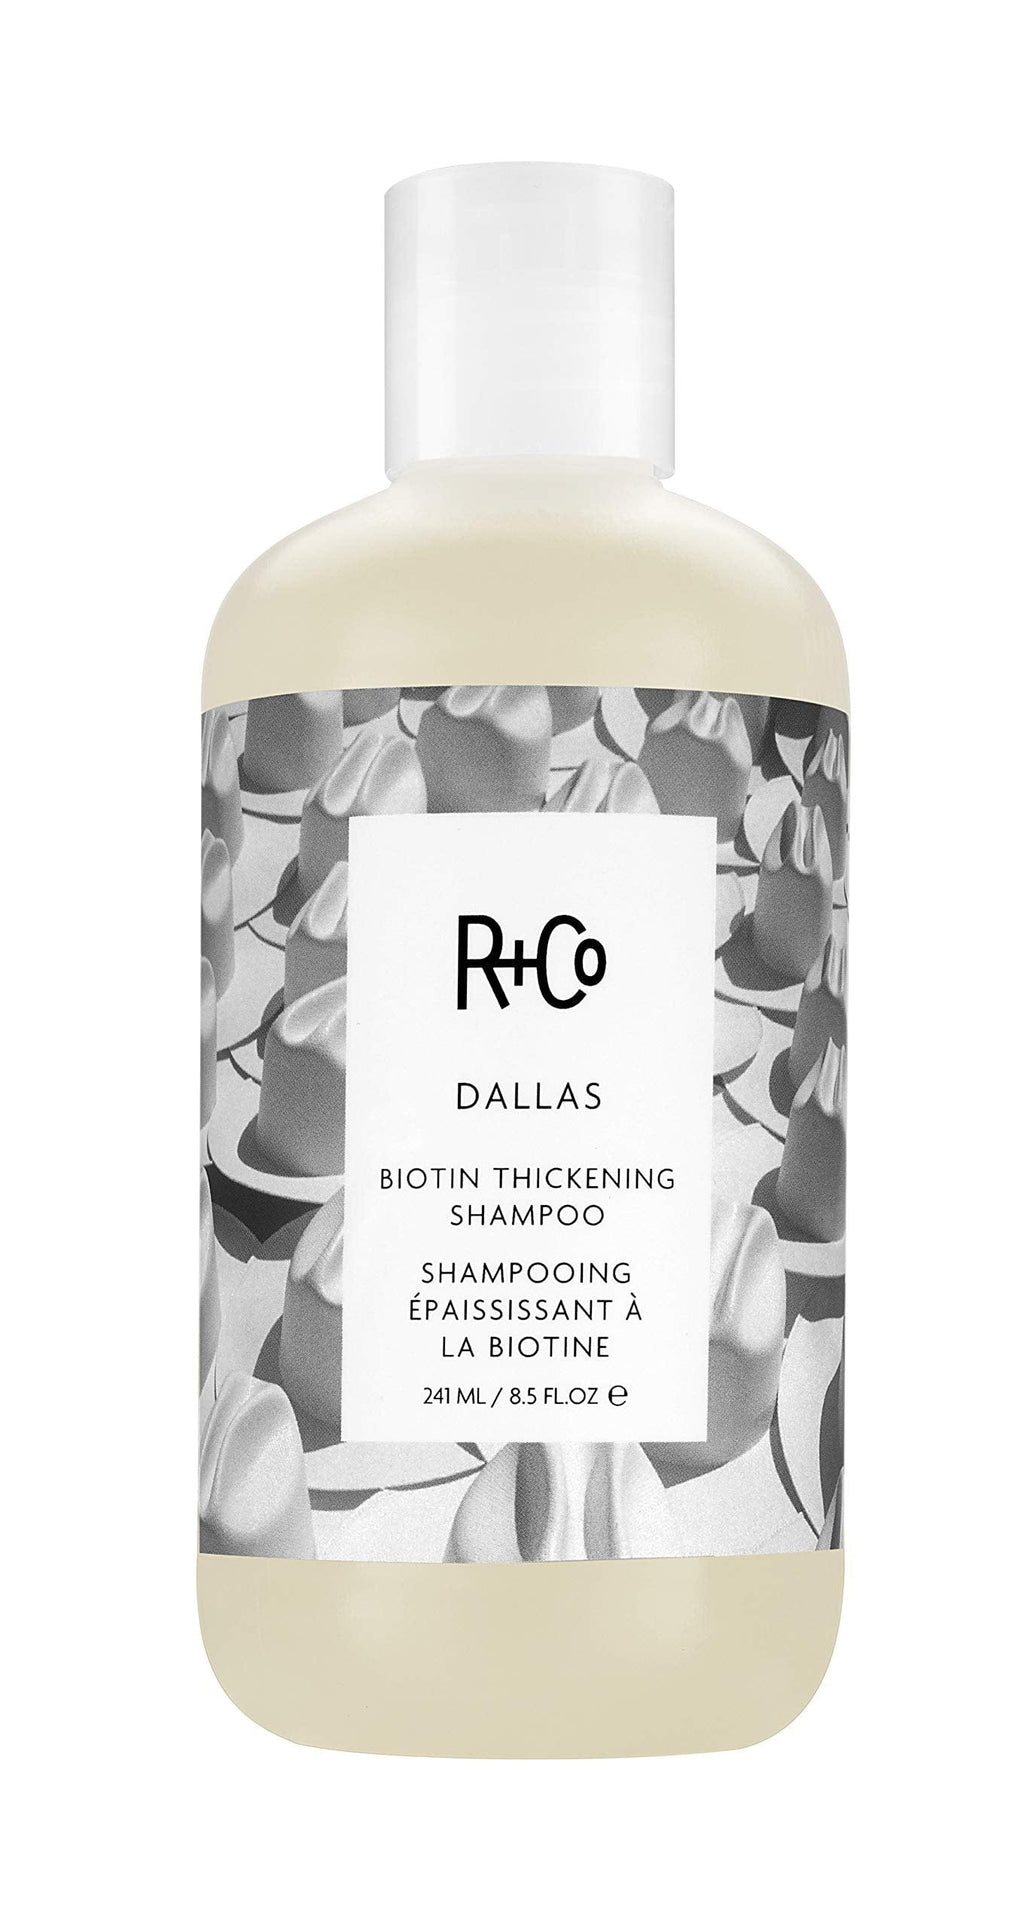 R+Co Shampoo DALLAS Biotin Thickening Shampoo